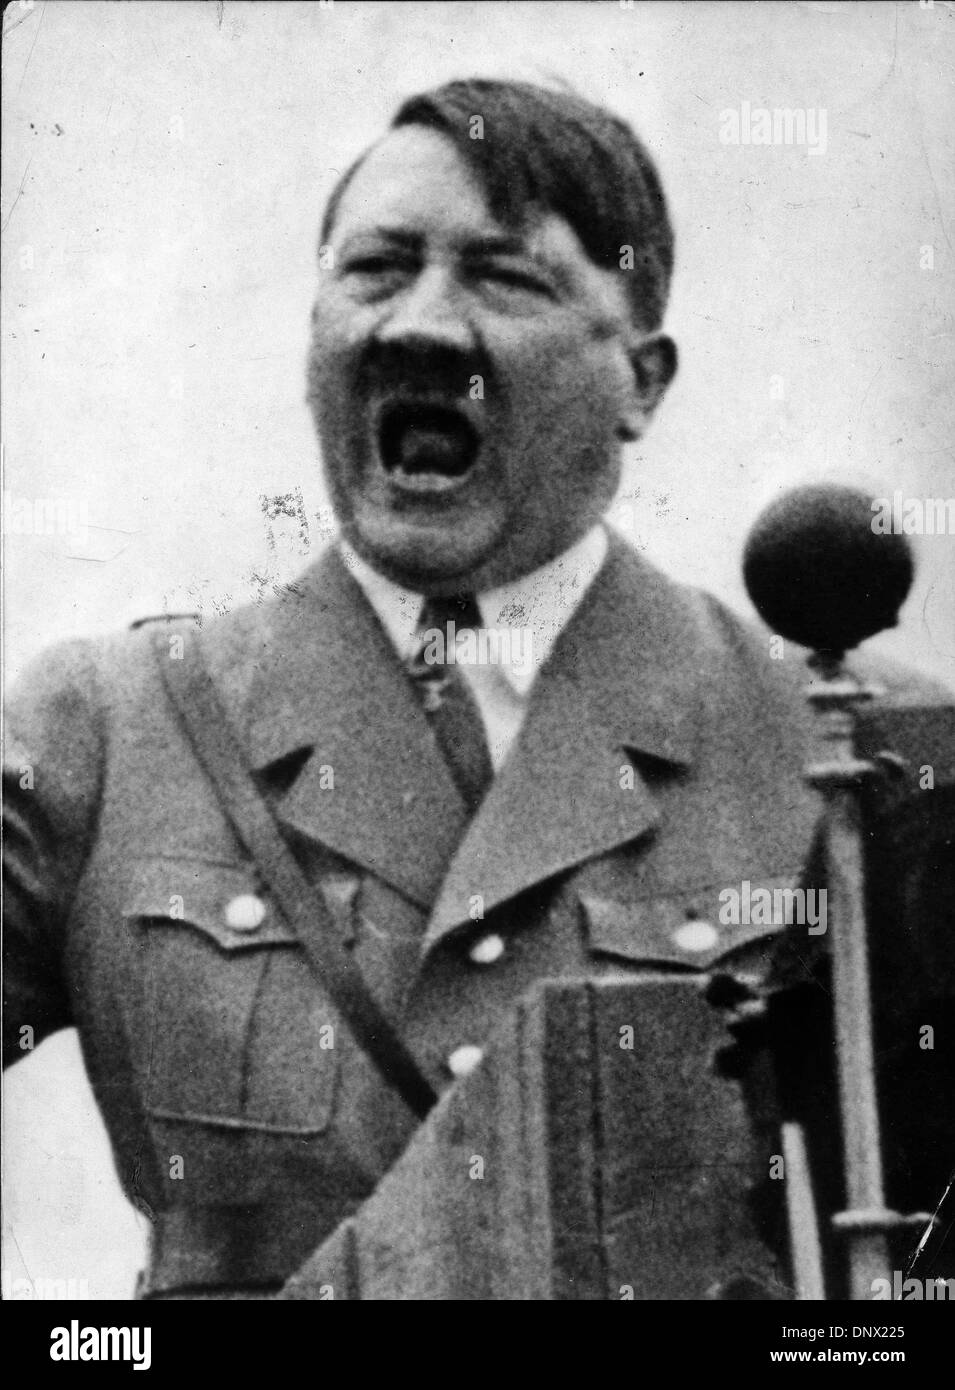 Agosto 5, 1939 - Berlino, Germania - leader nazista e Führer della Germania, ADOLF HITLER dando uno dei suoi discorsi altisonanti a volte nel 1939. (Credito Immagine: © Keystone Pictures USA/ZUMAPRESS.com) Foto Stock